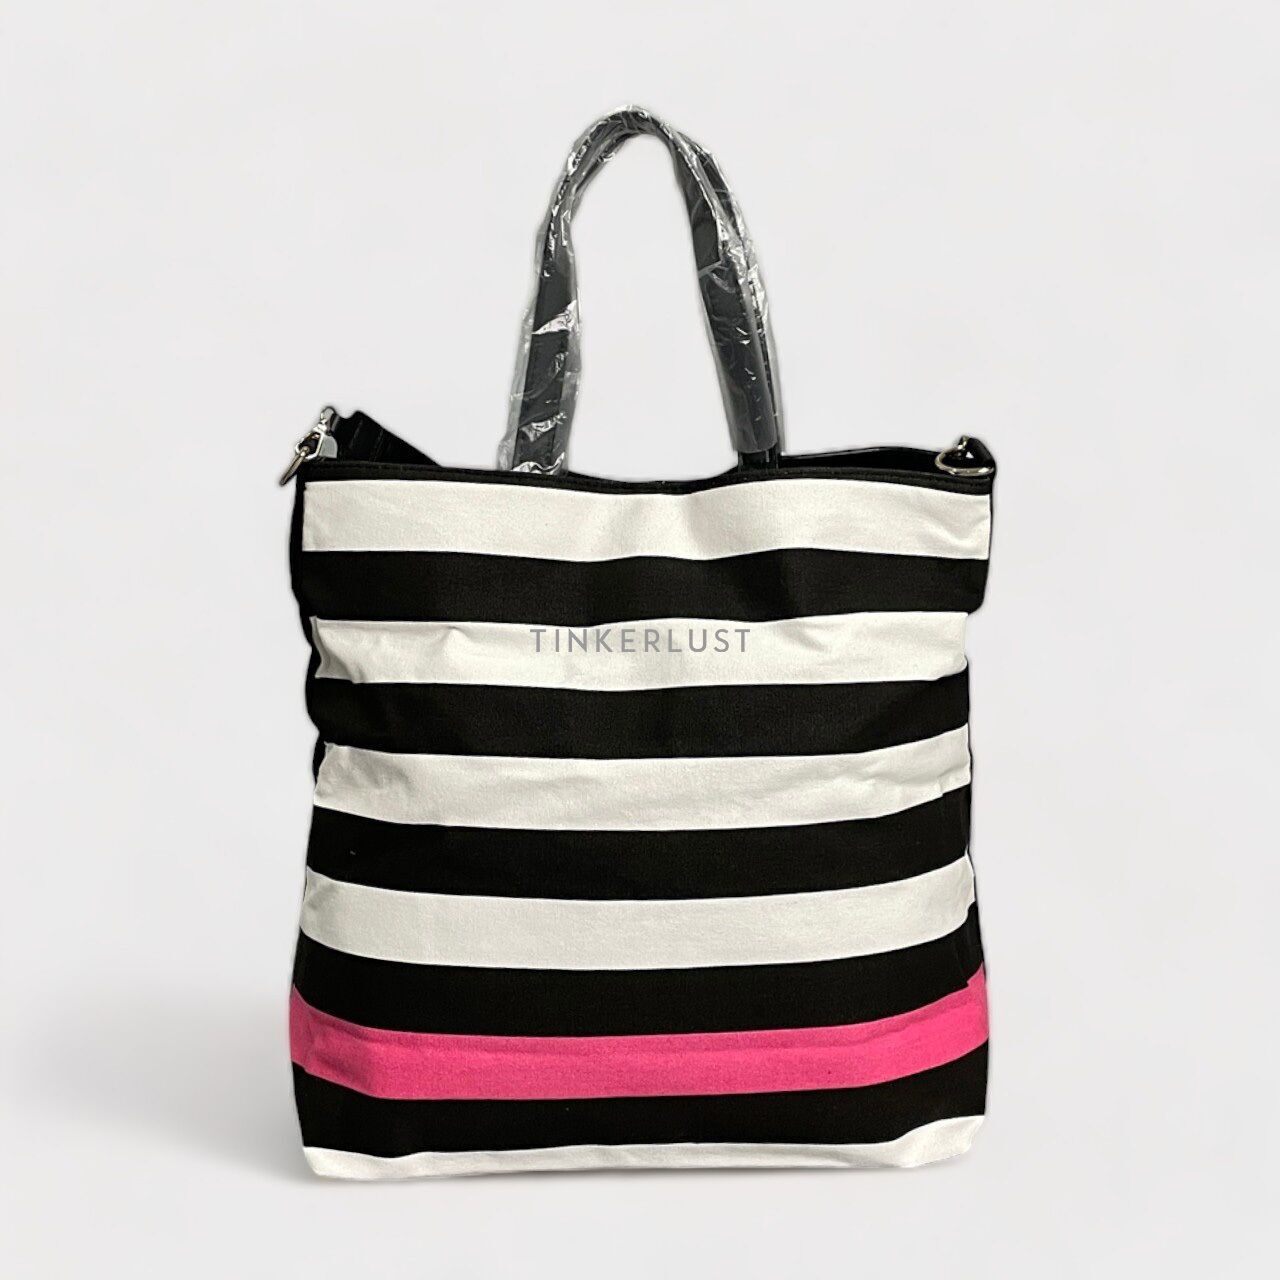 Victoria Secret Striped Beach Bag